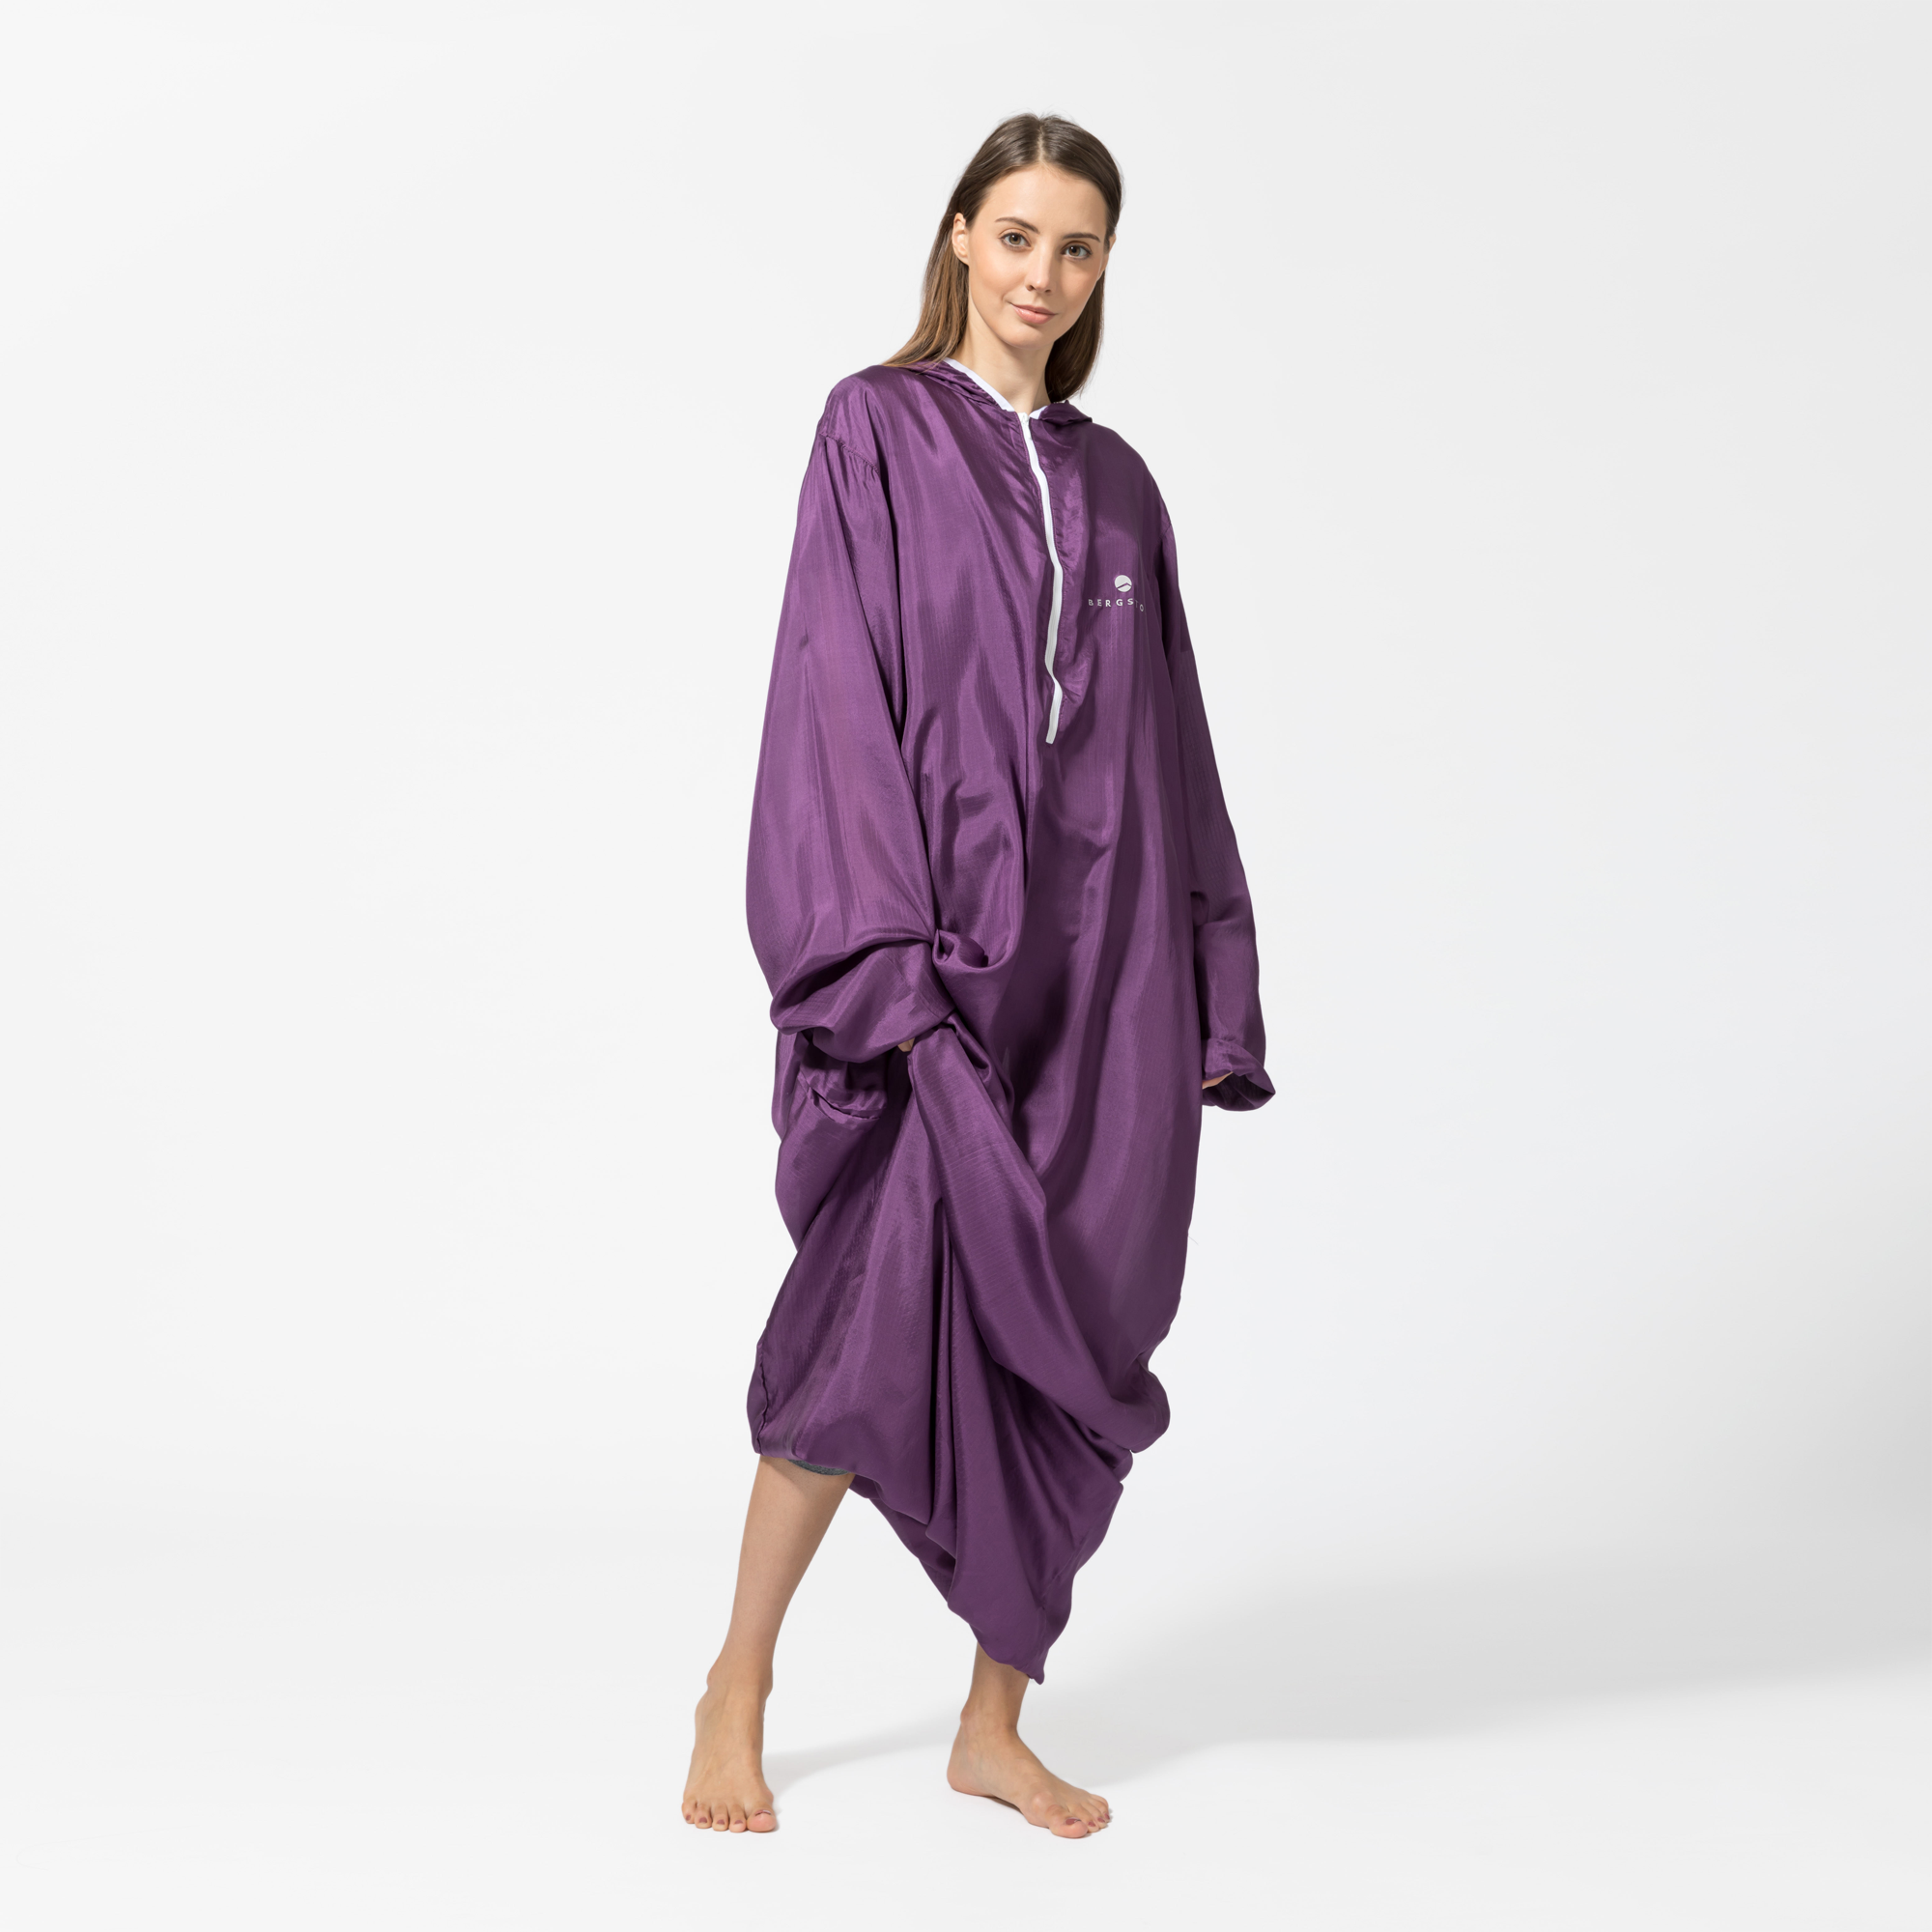 Der SilkLiner ist ein angenehm leichter und komfortabler Hüttenschlafsack aus hochwertiger Seide mit Armen und Kapuze. Ideal für Übernachtungen in Hütten und Herbergen